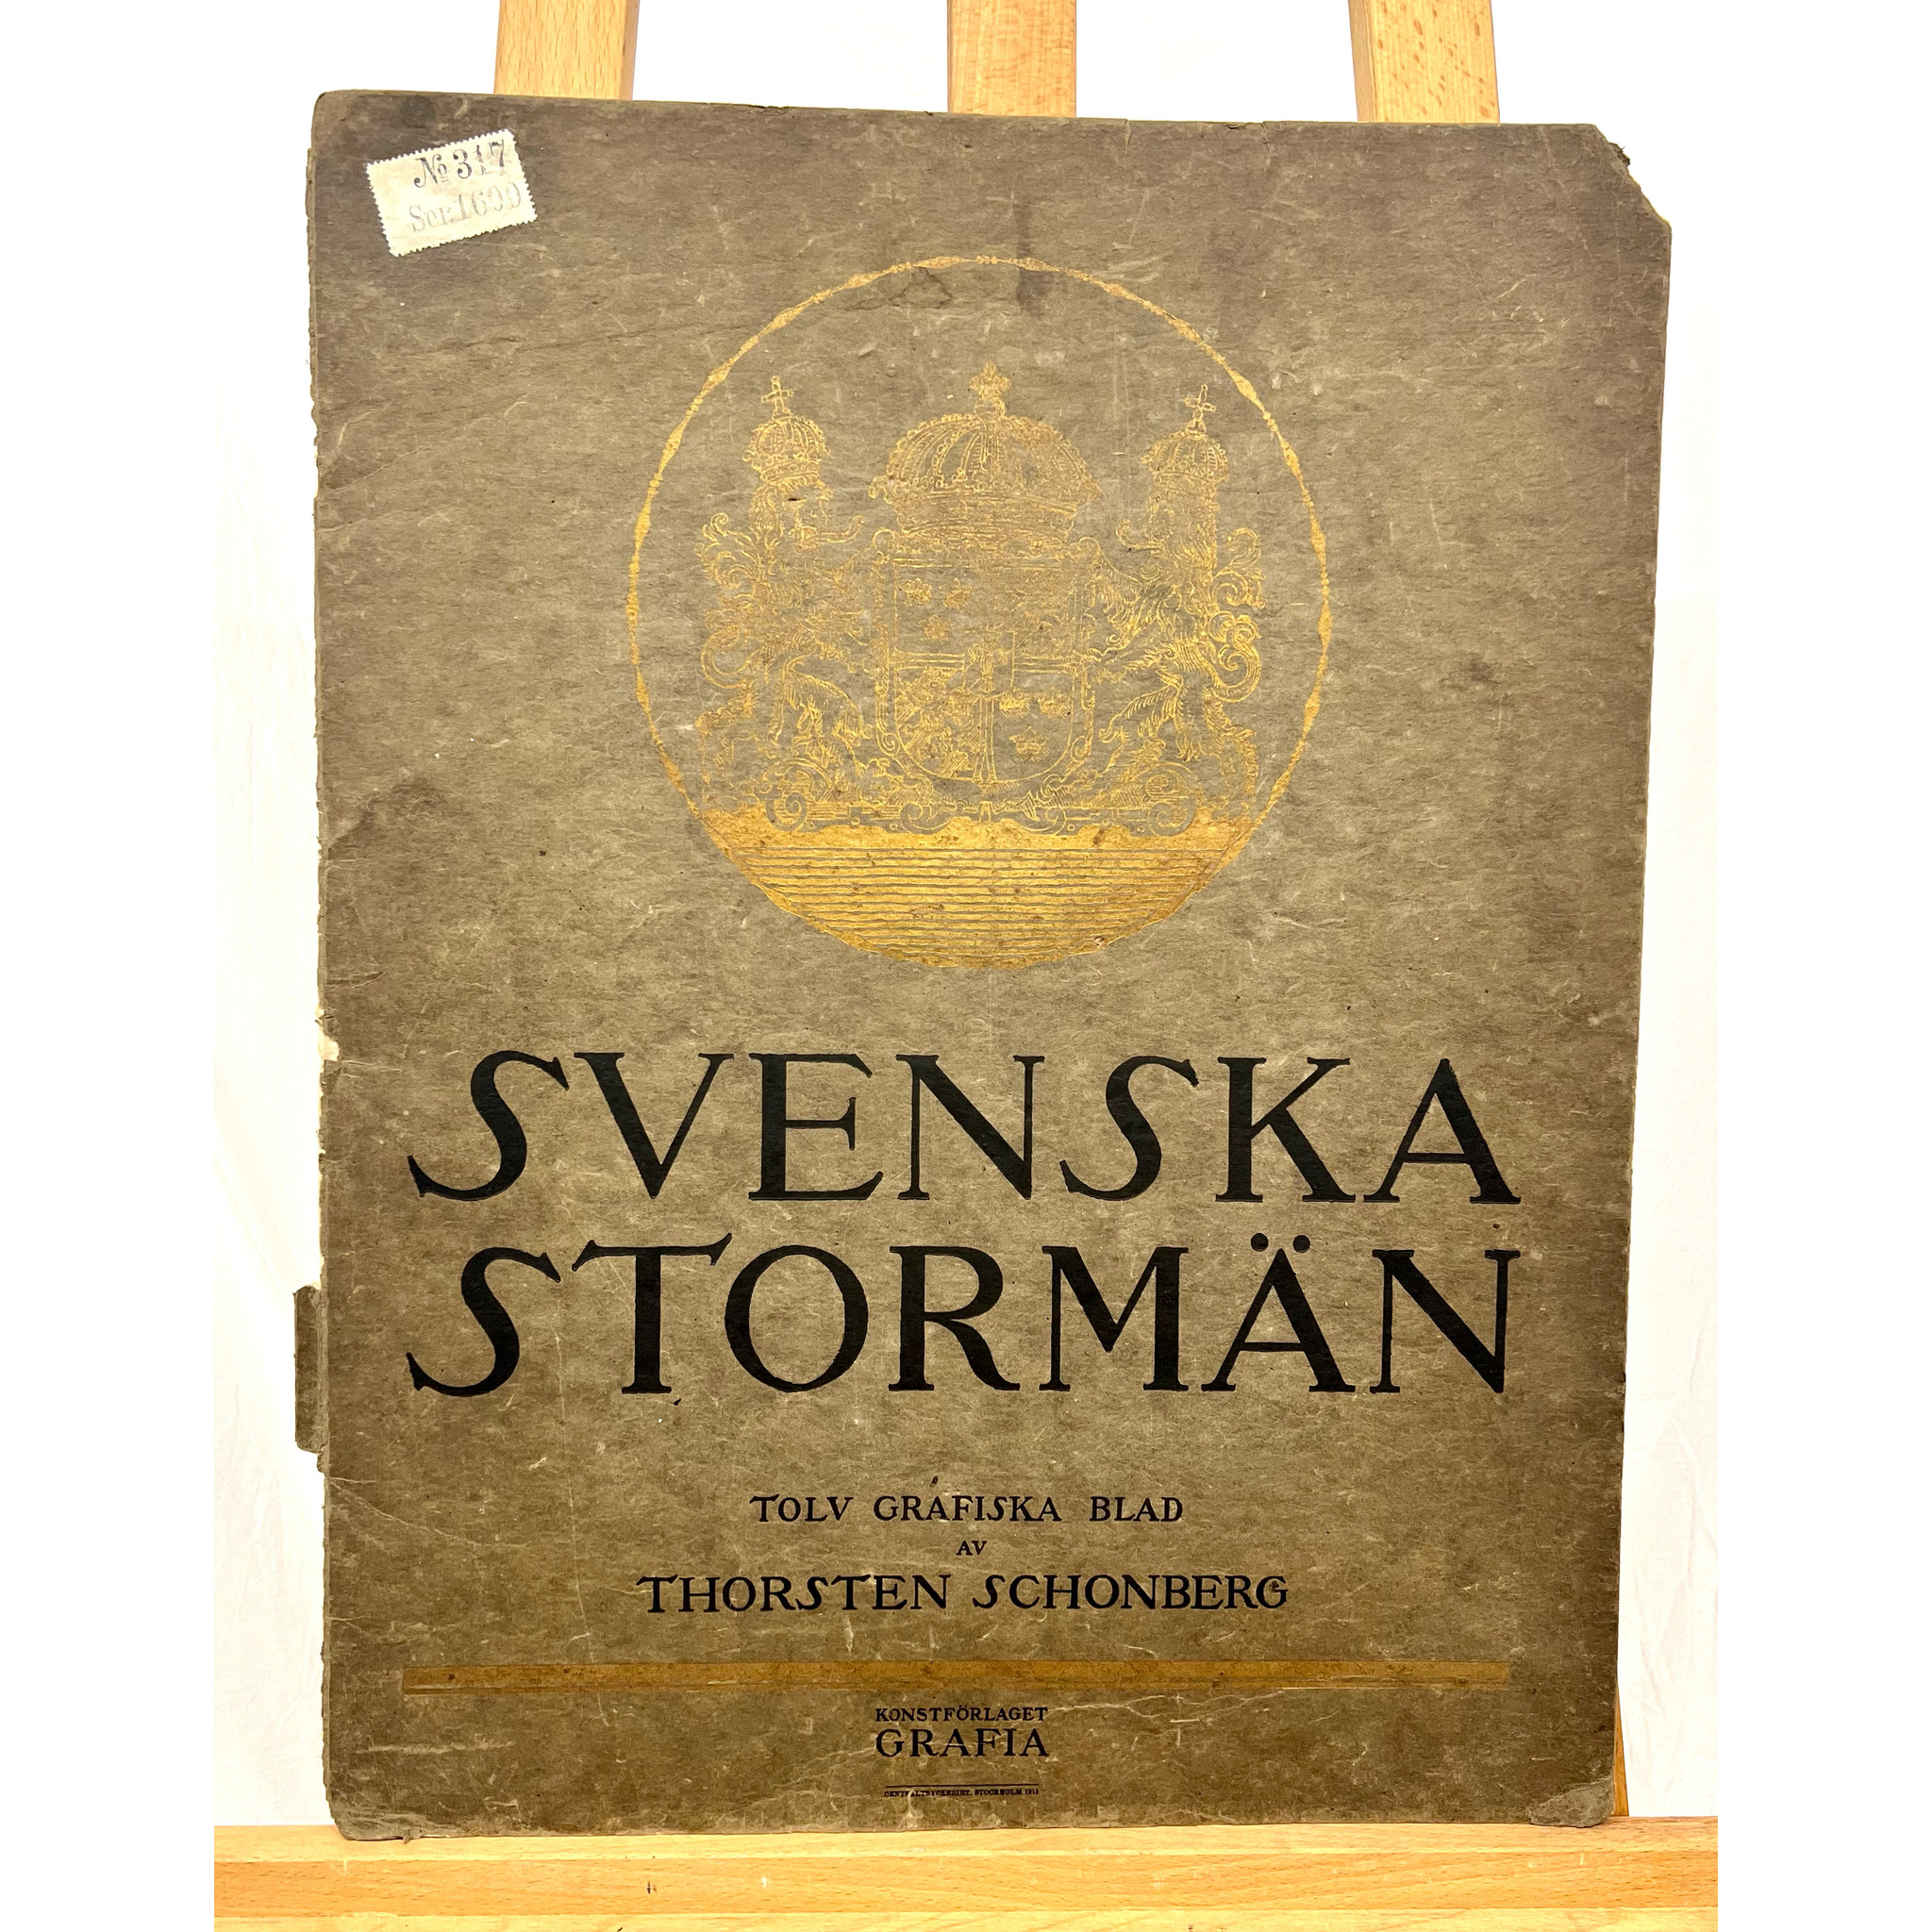 "Carolus" Grafisk blad av Thorsten Schonberg ur mappen "Svenska Stormän". Nr 44/100. 40x52 cm